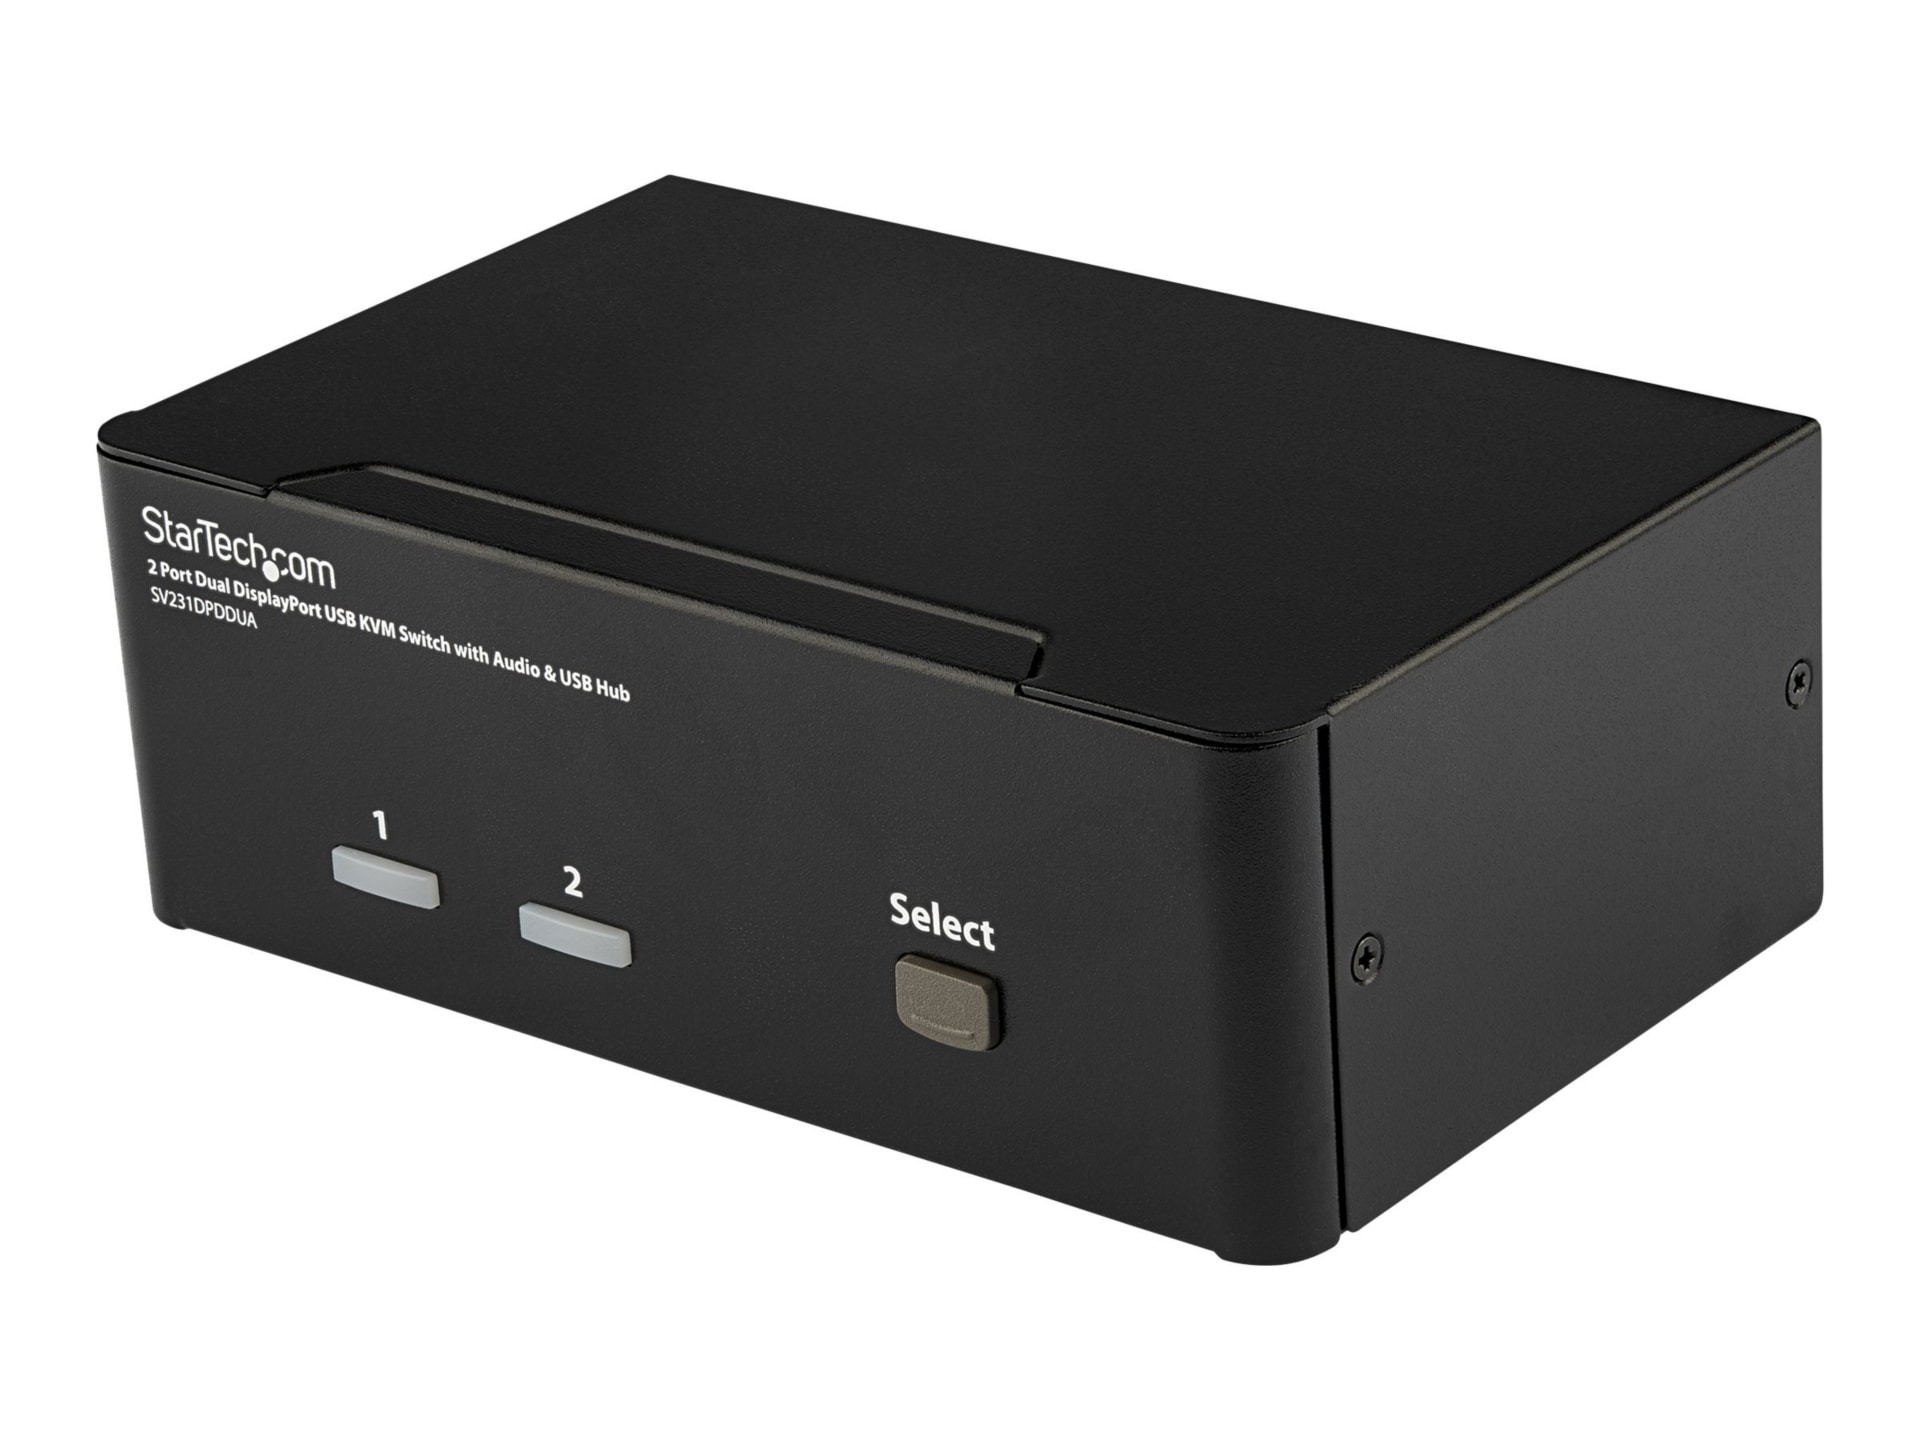 StarTech.com 2 Port Dual DisplayPort USB KVM Switch w/ Audio & USB Hub